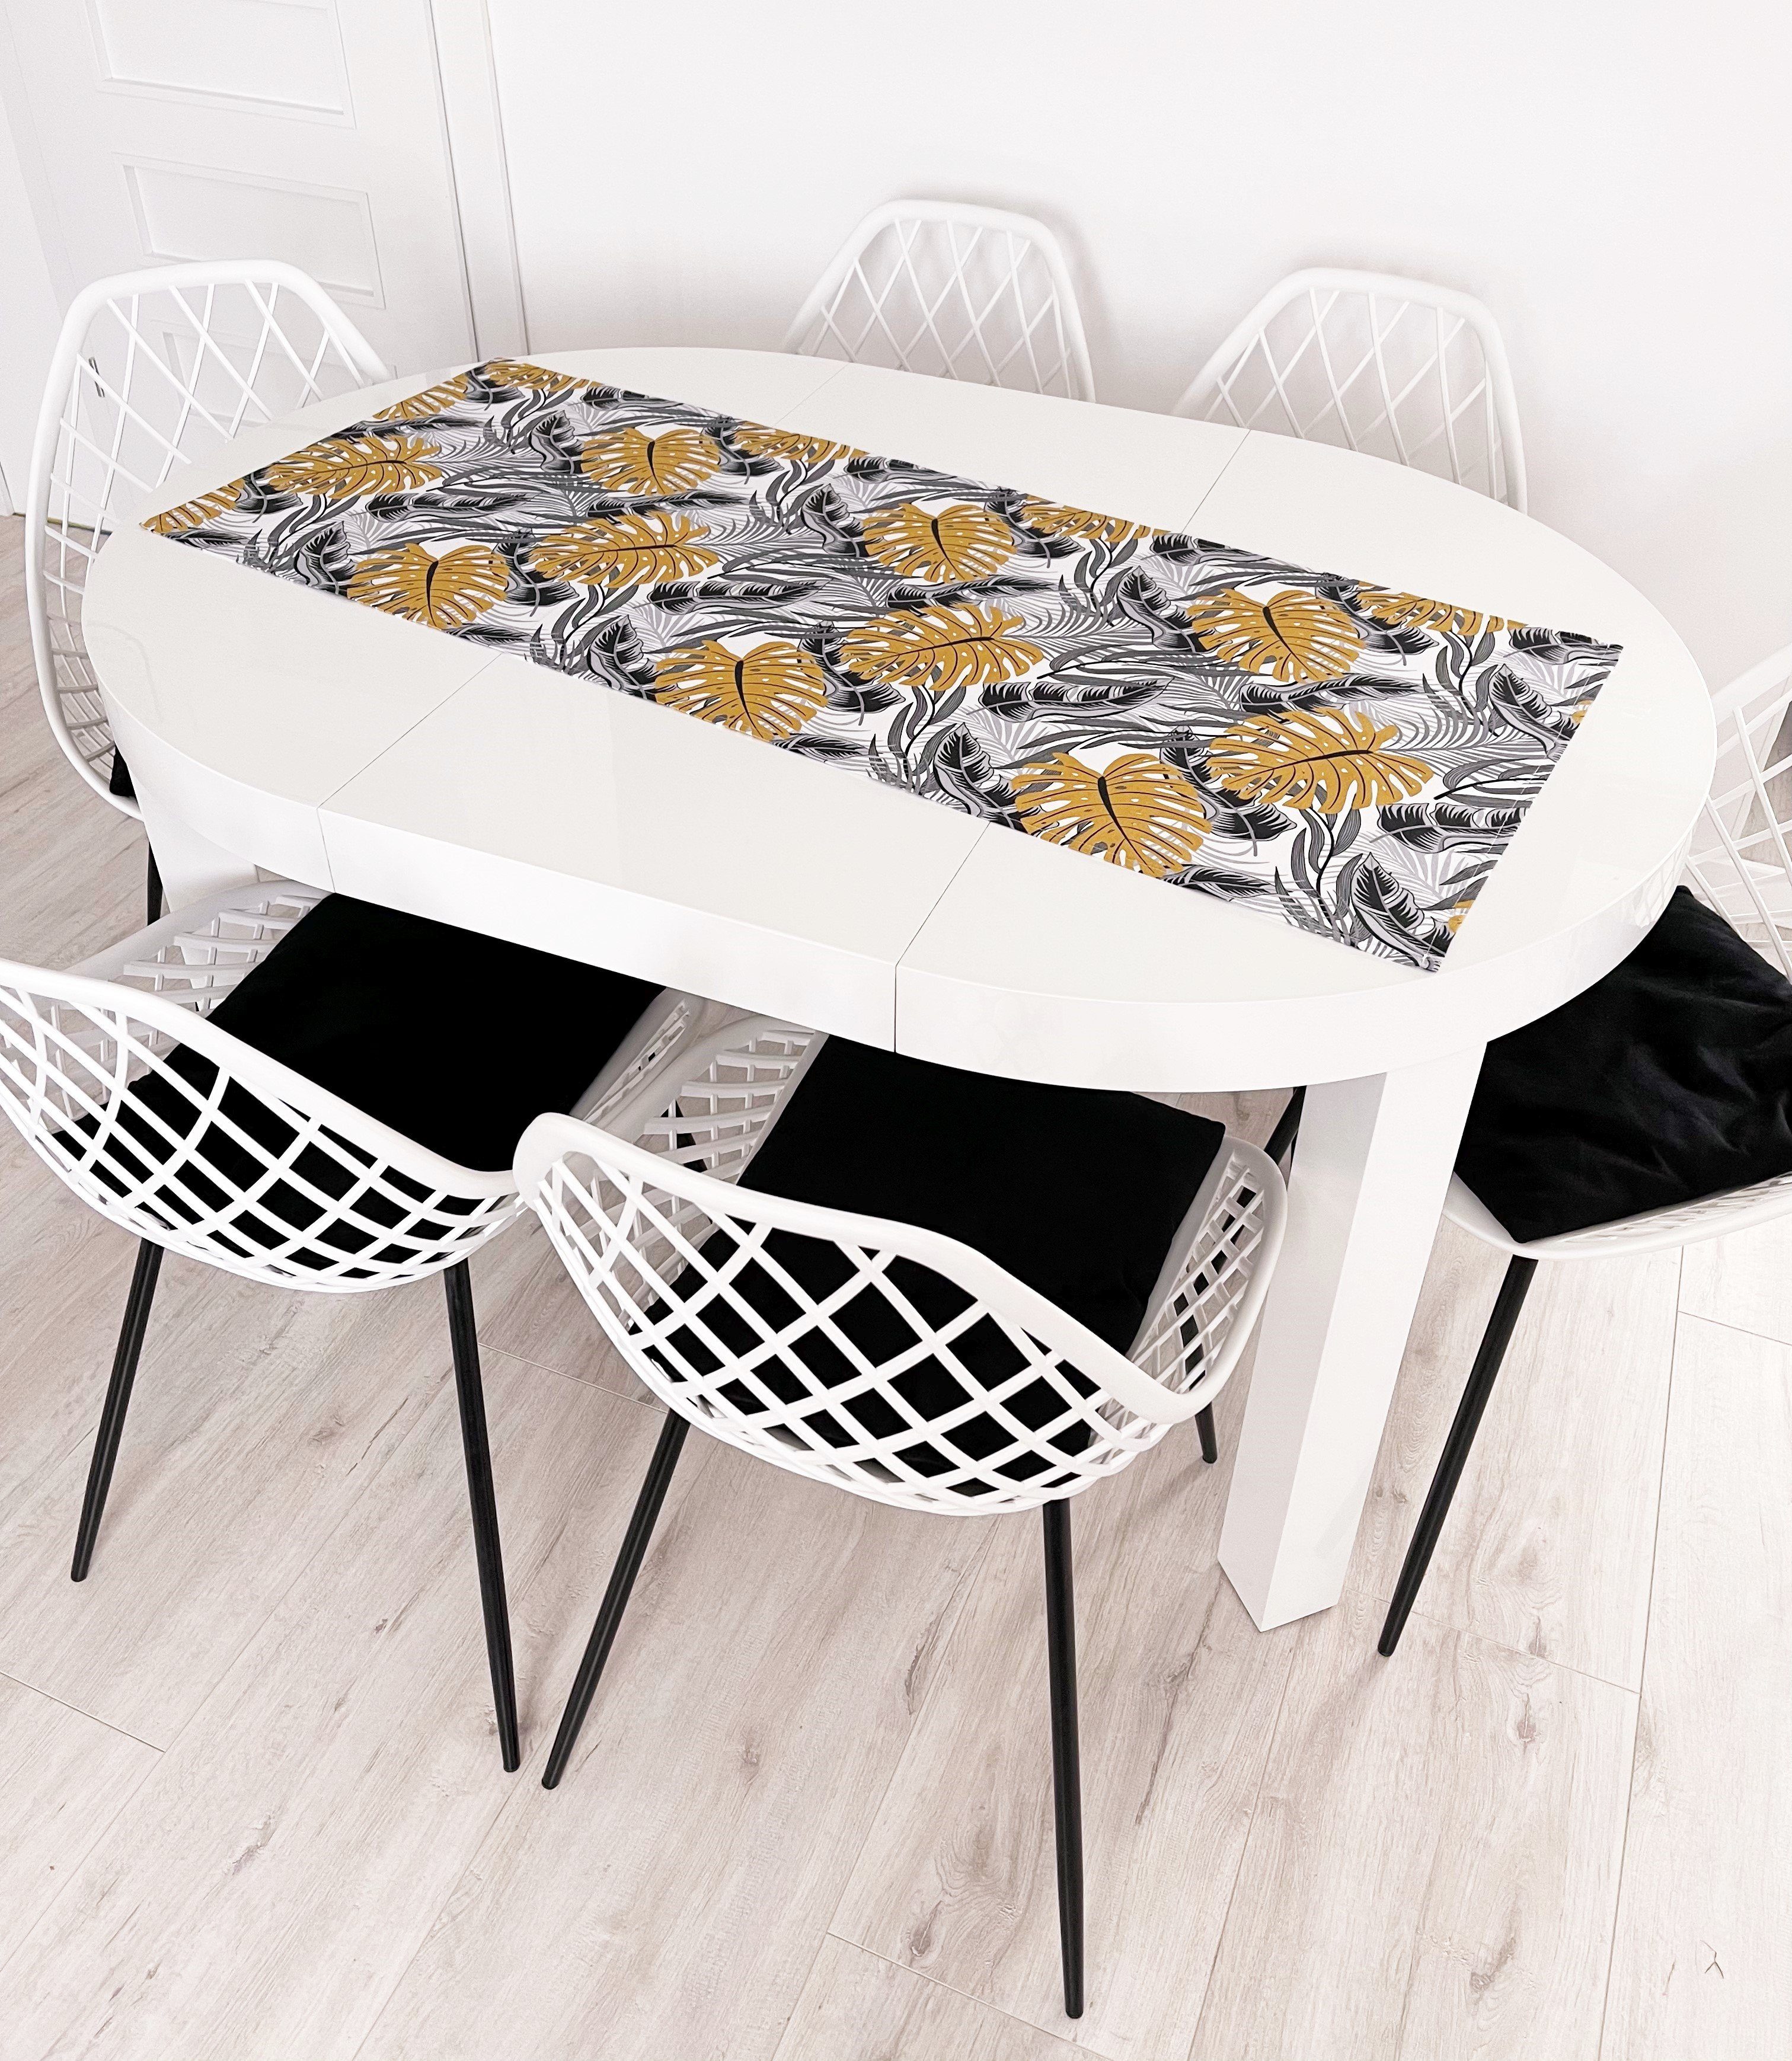 RoKo-Textilien Tischläufer Tischläufer Tischdecke Tischlaeufer verfügbar 100% 18 gedeckter Baumwolle in Maßen Tisch